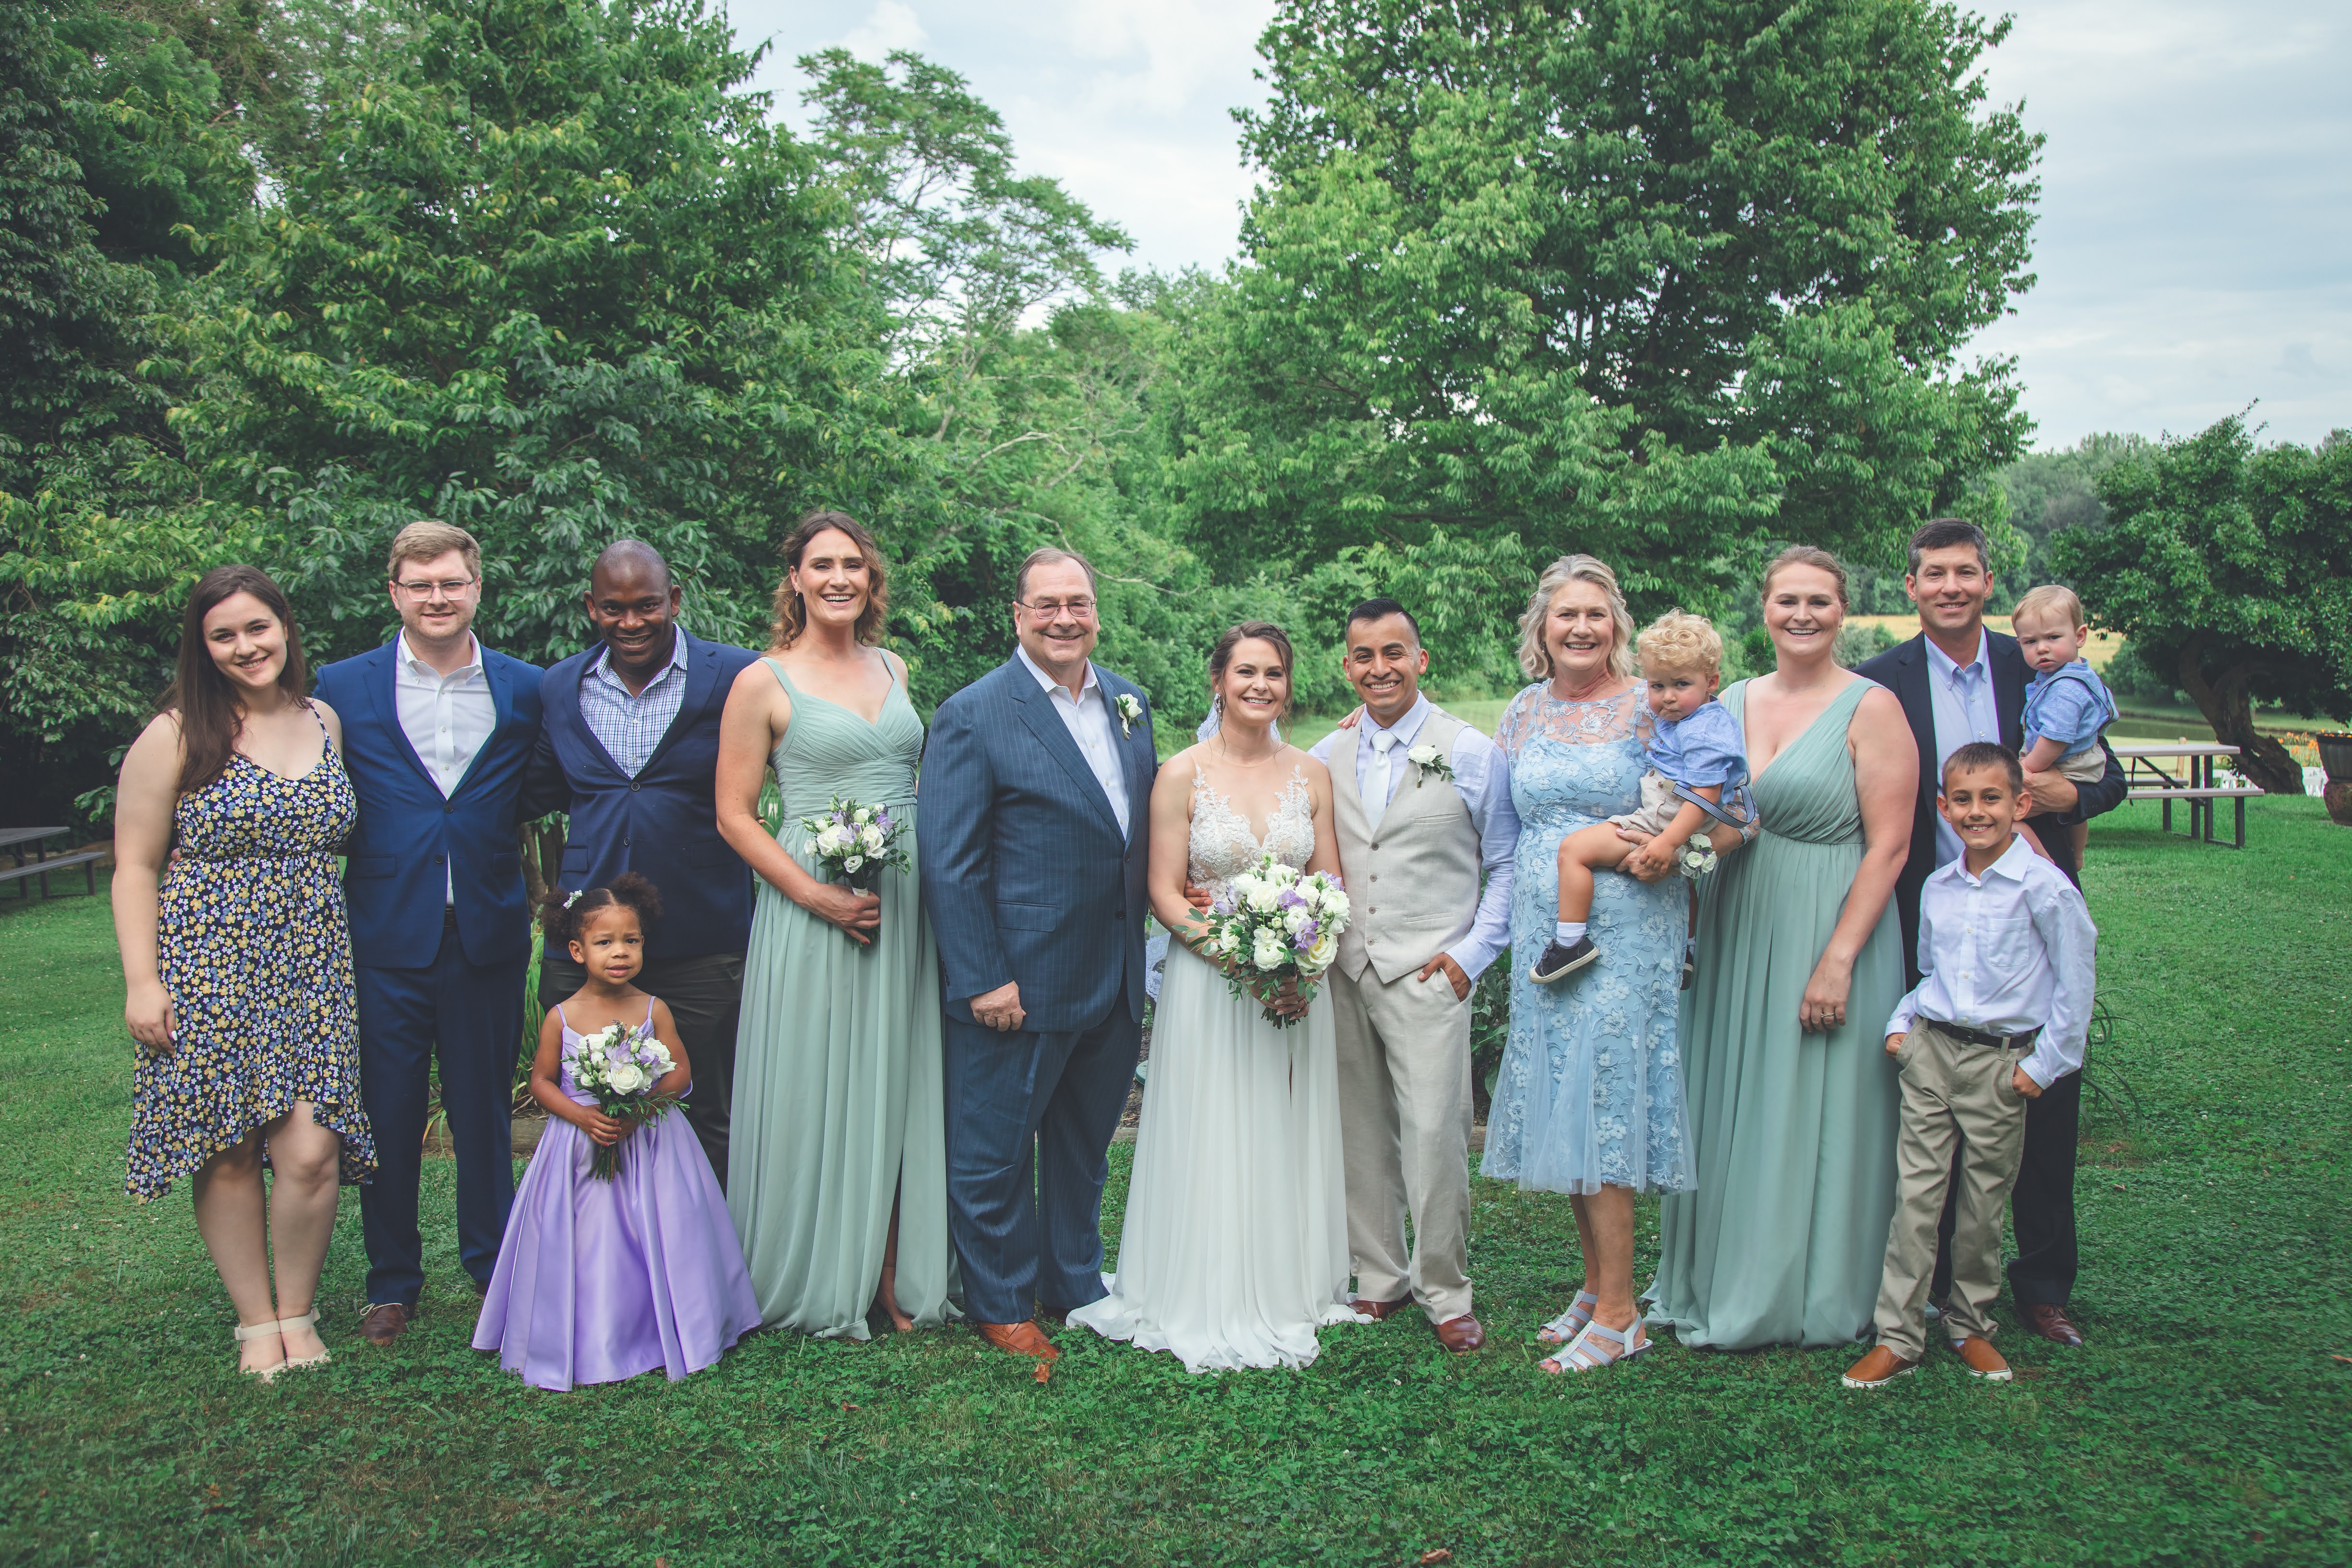 Erath Family at a wedding